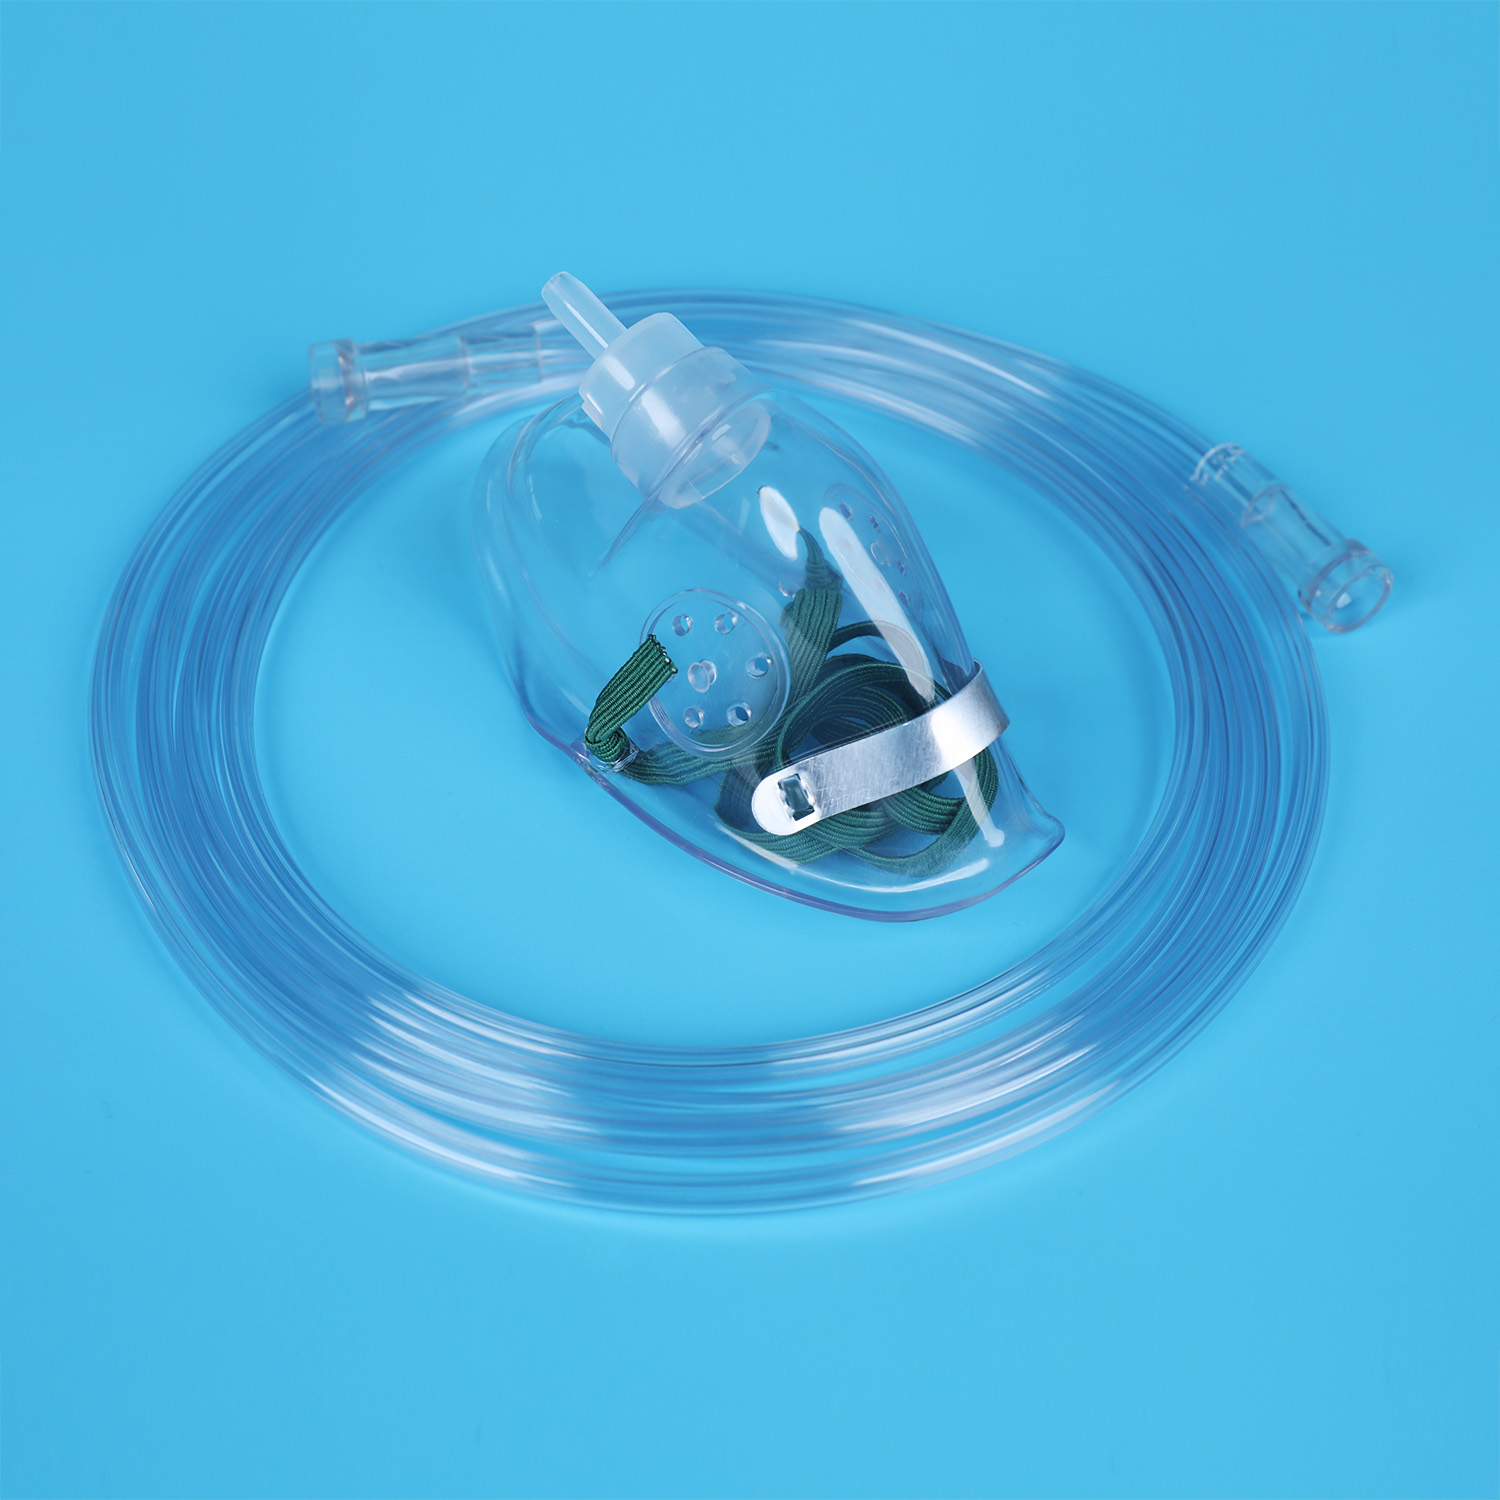 Fornecedor de máscara de oxigênio médica em PVC descartável FDA